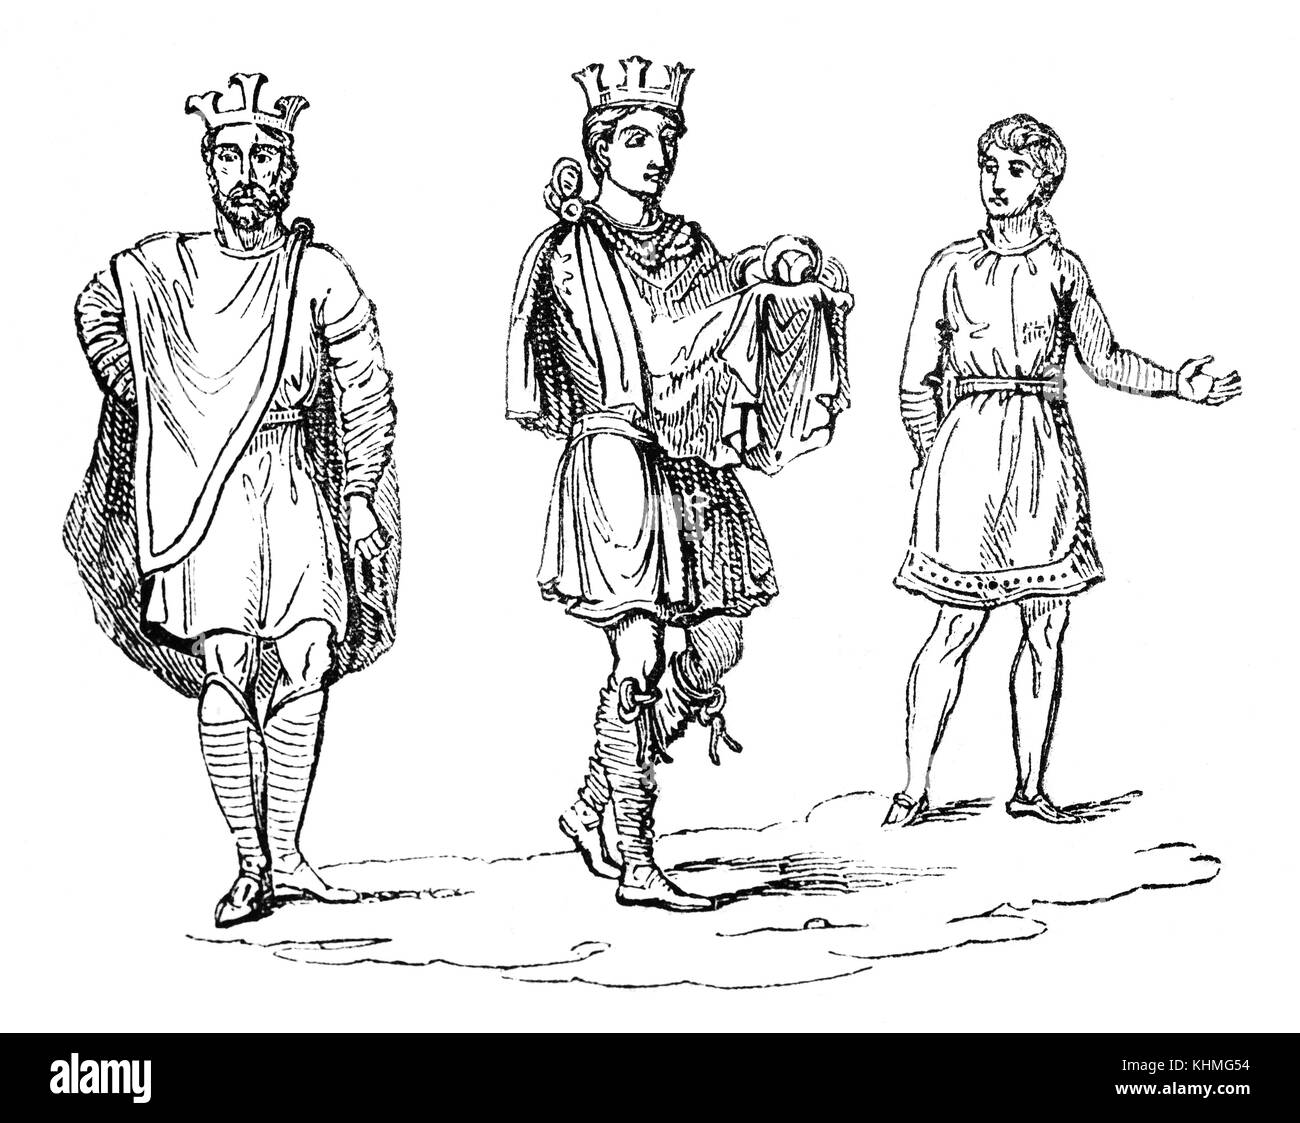 El Civic traje que incluye una corona, la realeza Anglosajona en el siglo IX, Inglaterra. Foto de stock